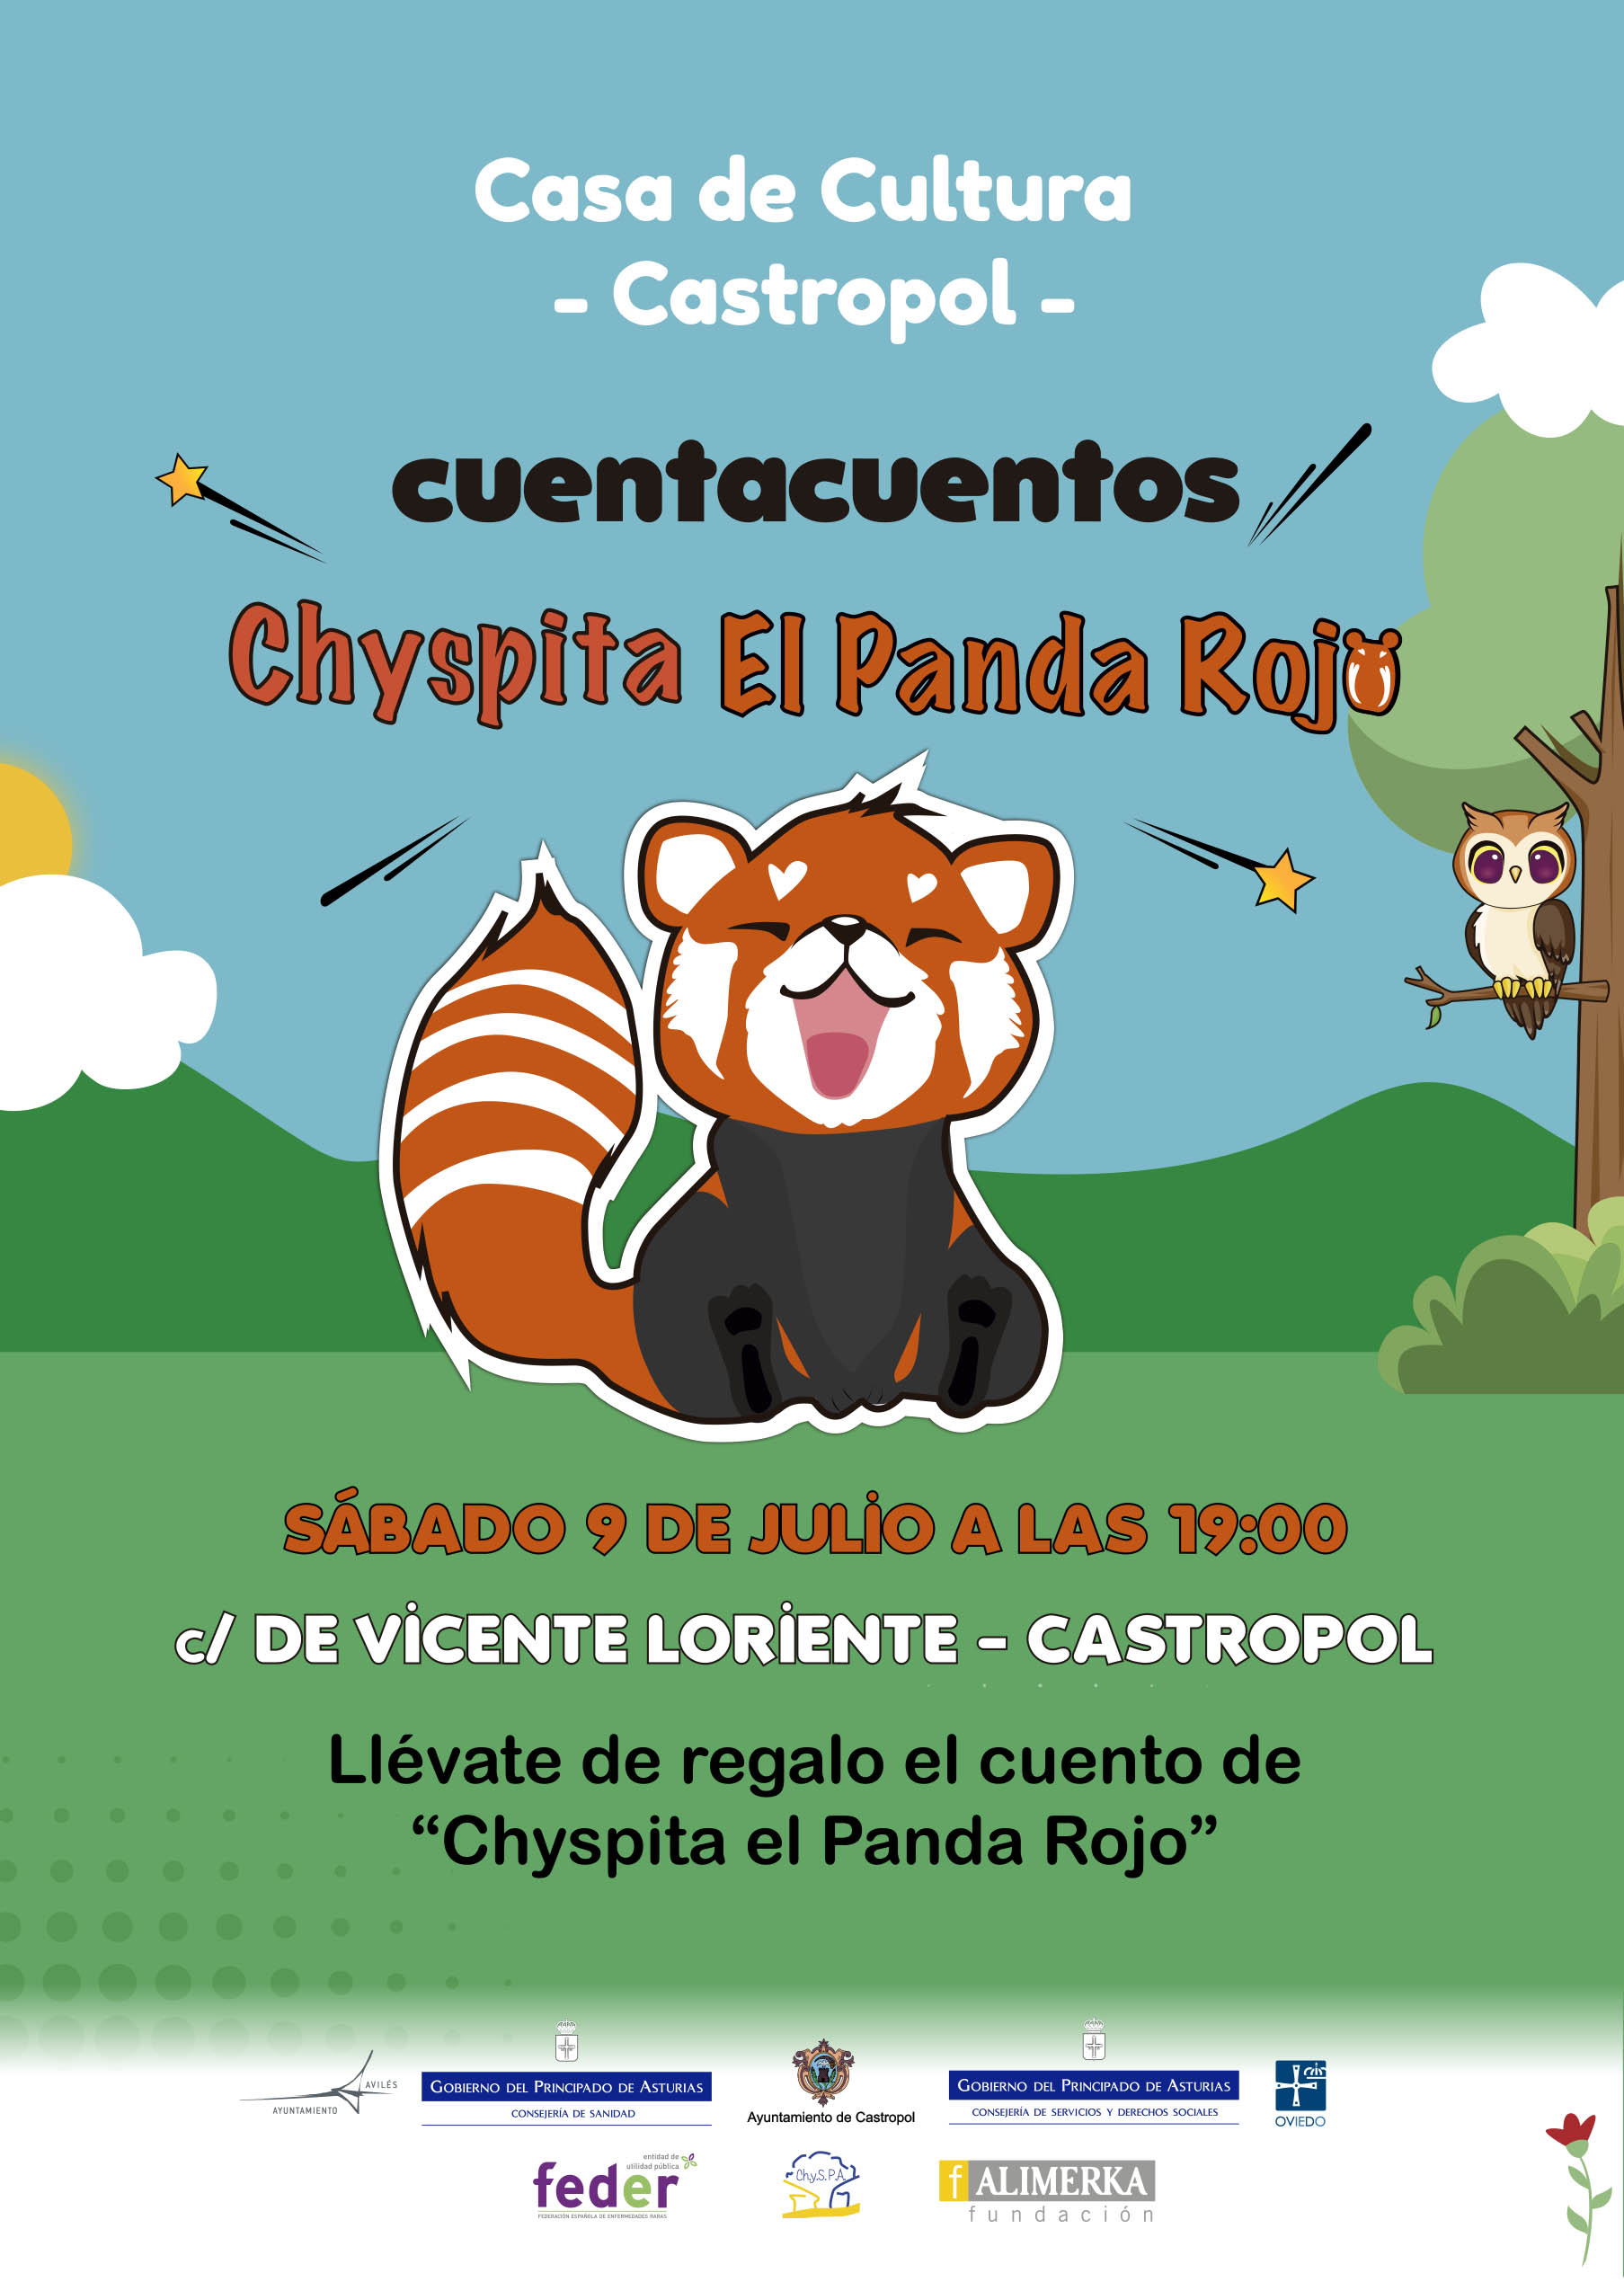 Cuentacuento Chyspita el panda rojo en Castropol, en la Casa de la Cultura el 9 de julio a las 19:00h